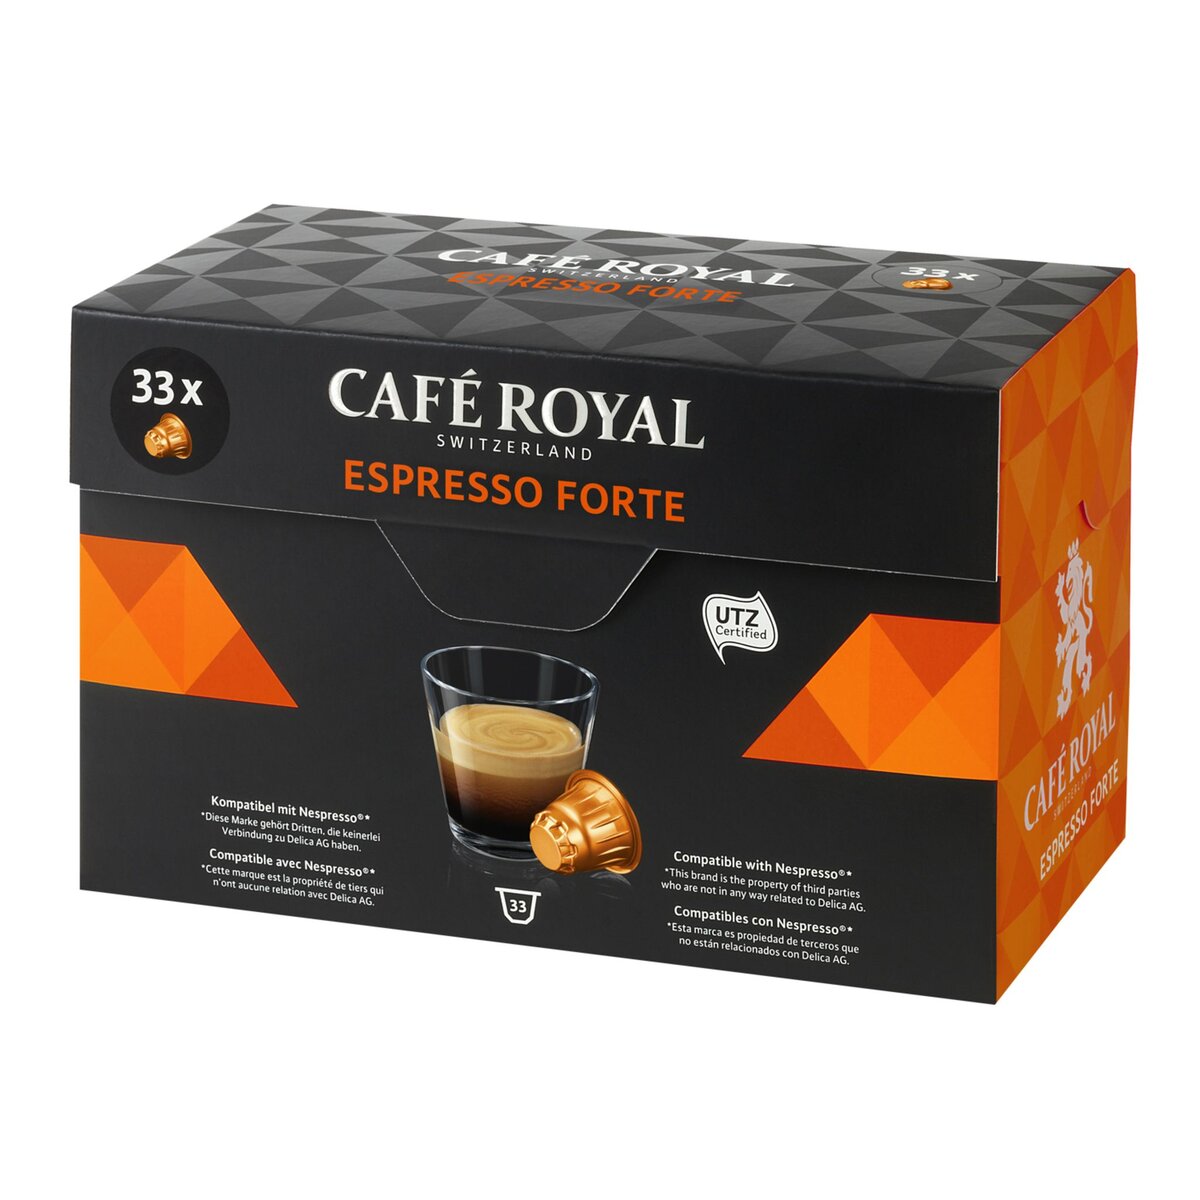 CAFE ROYAL Café Royal espresso forte capsule x33 -170g